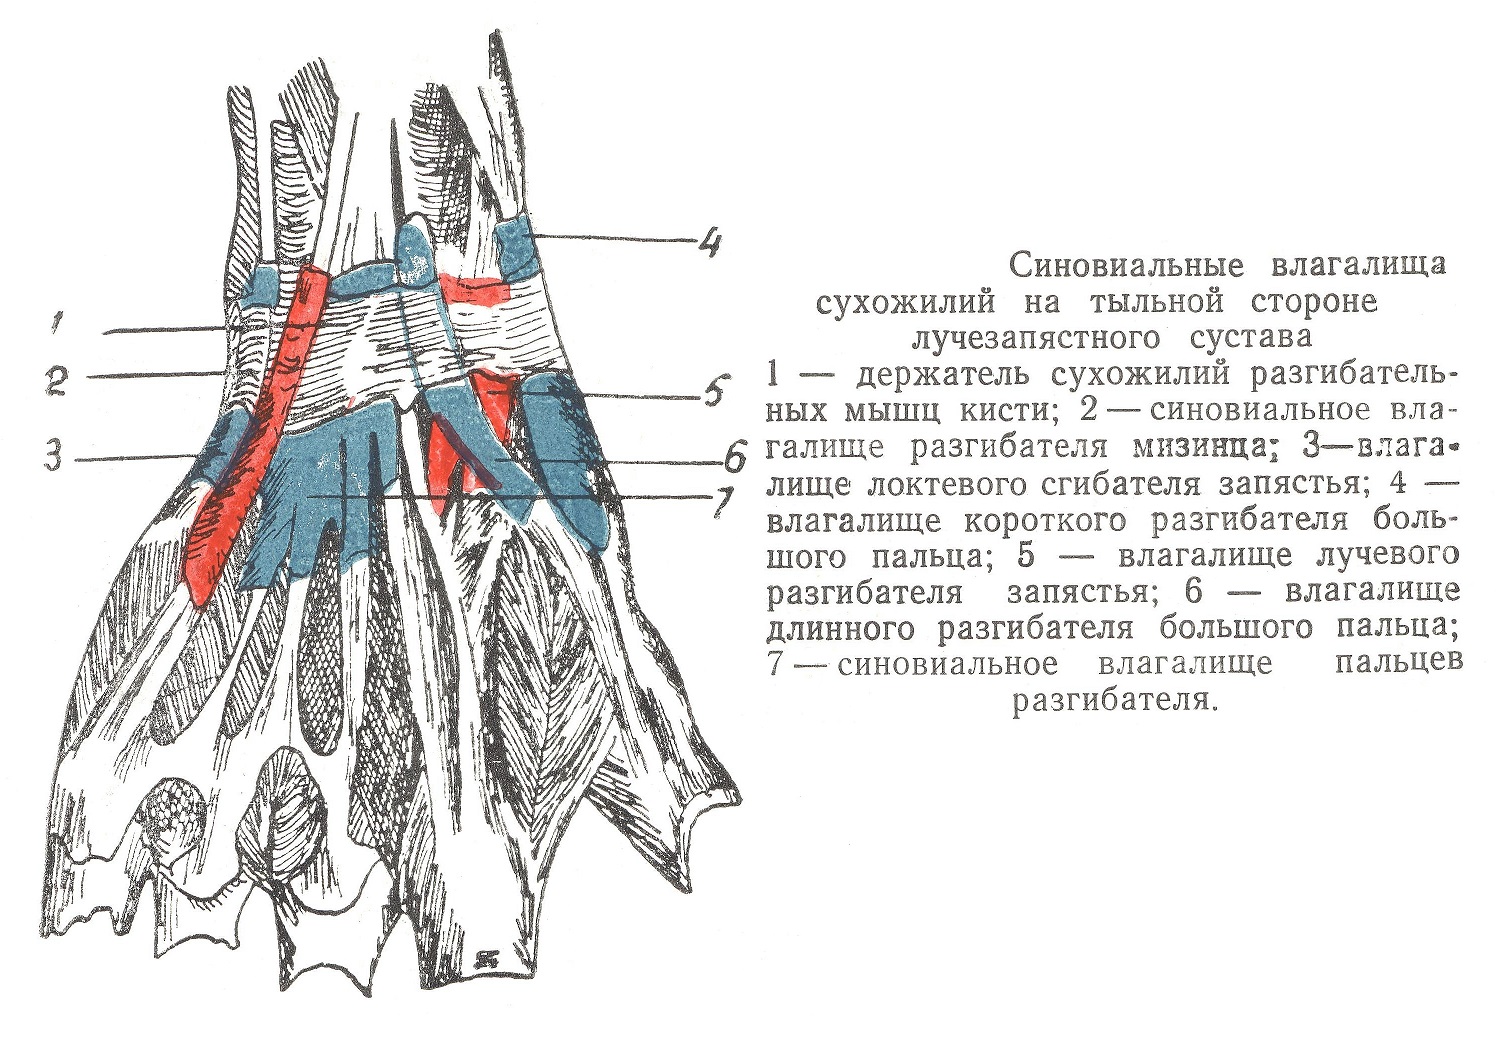 Синовиальные влагалища сухожилий на тыльной стороне лучезапястного сустава